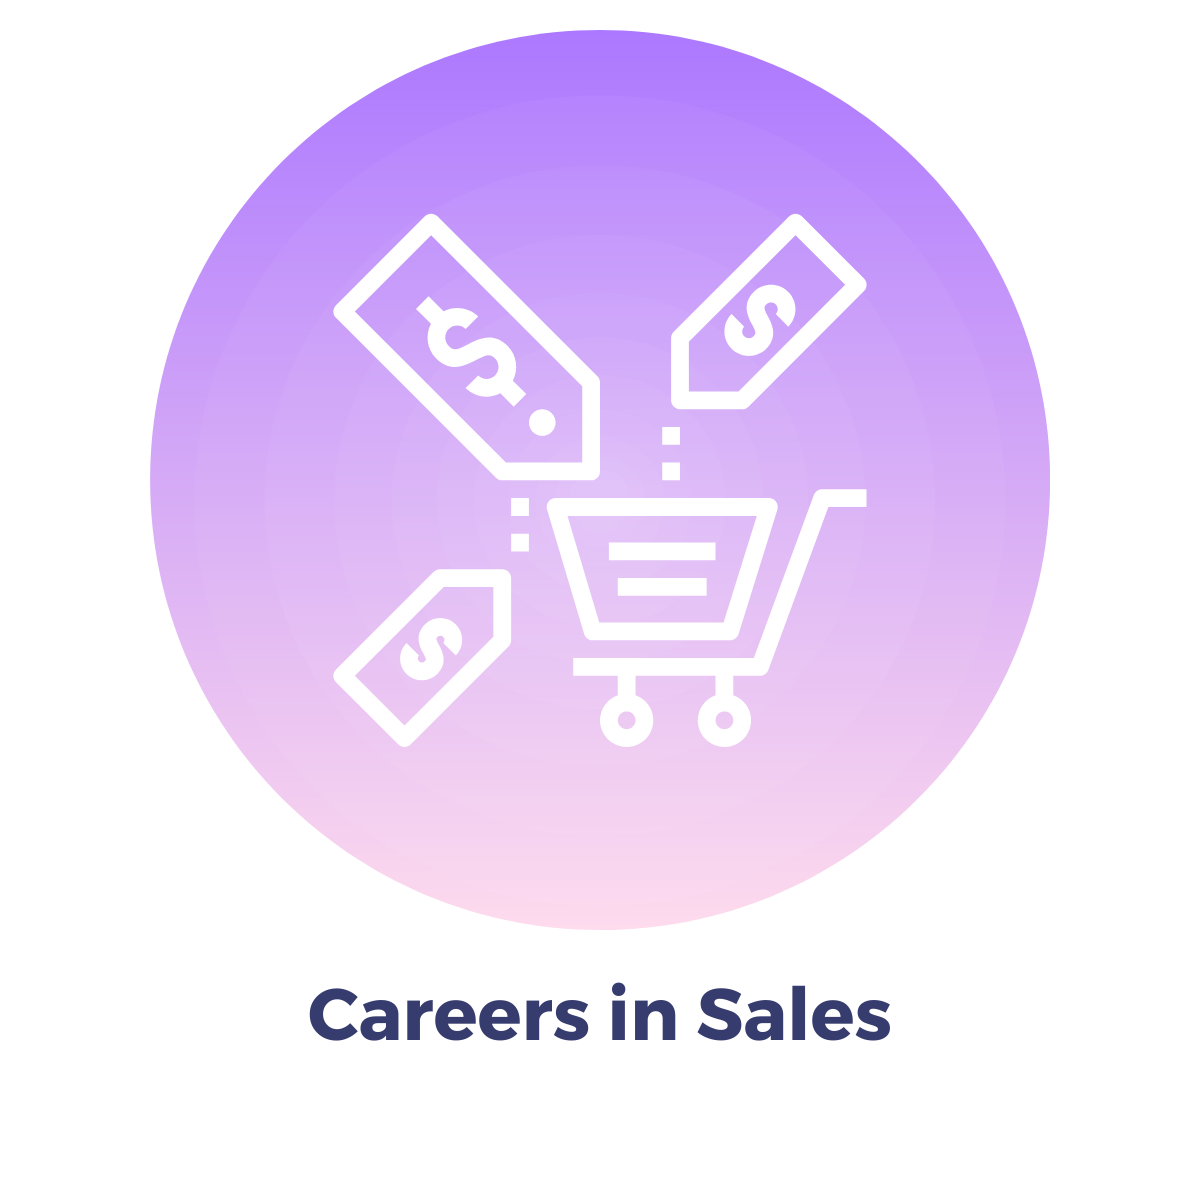 Careers in Sales